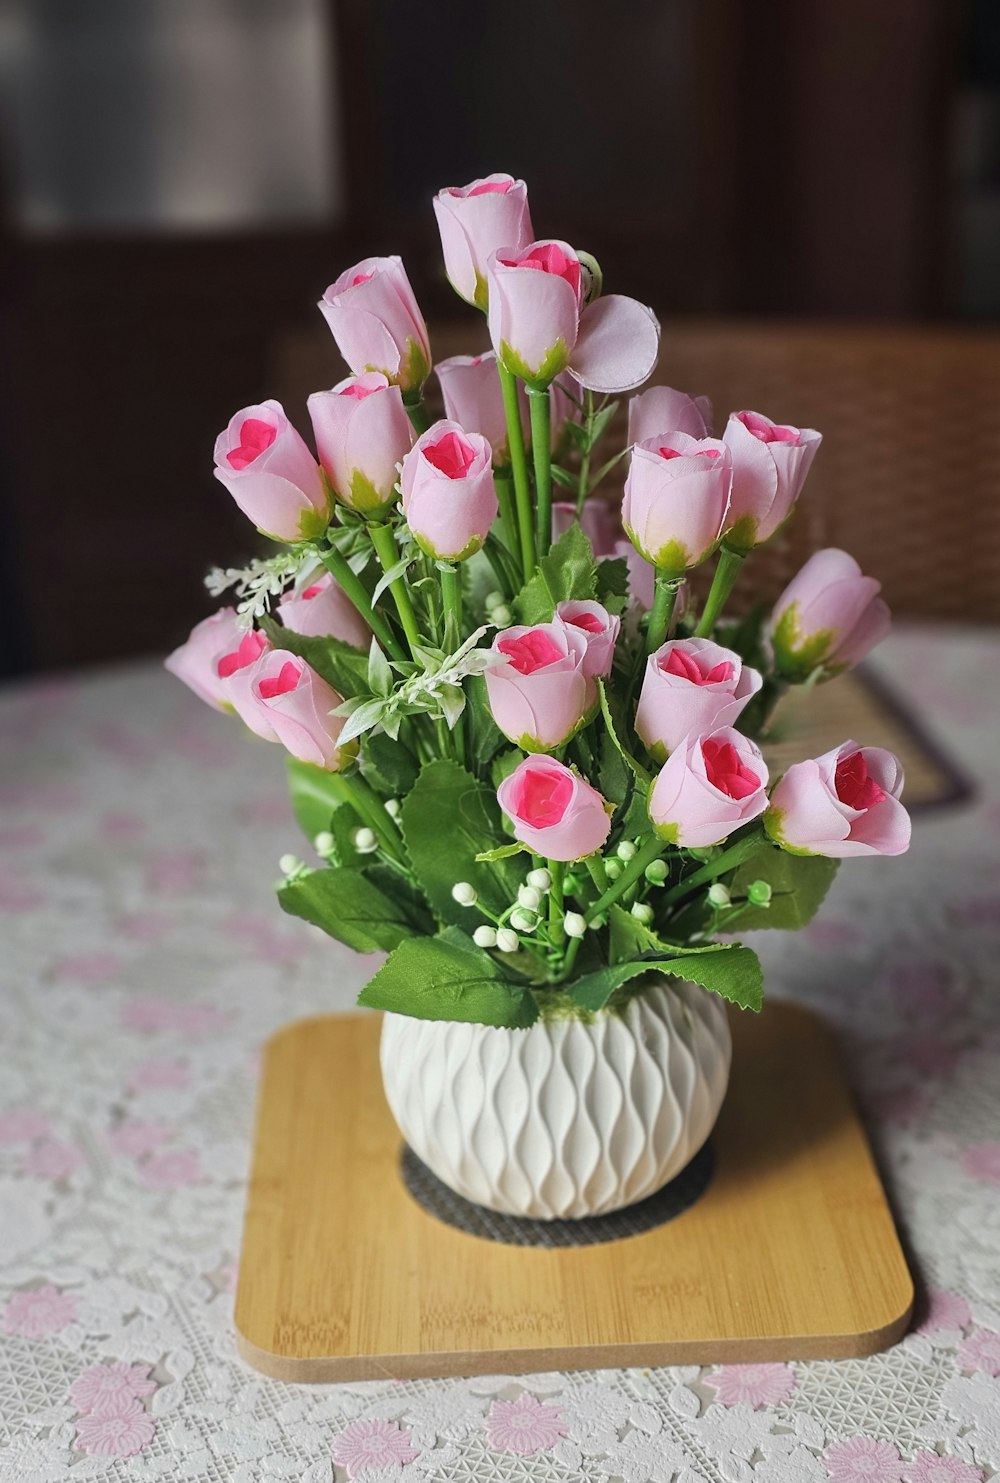 テーブルの上にはピンクの花が咲き乱れた白い花瓶